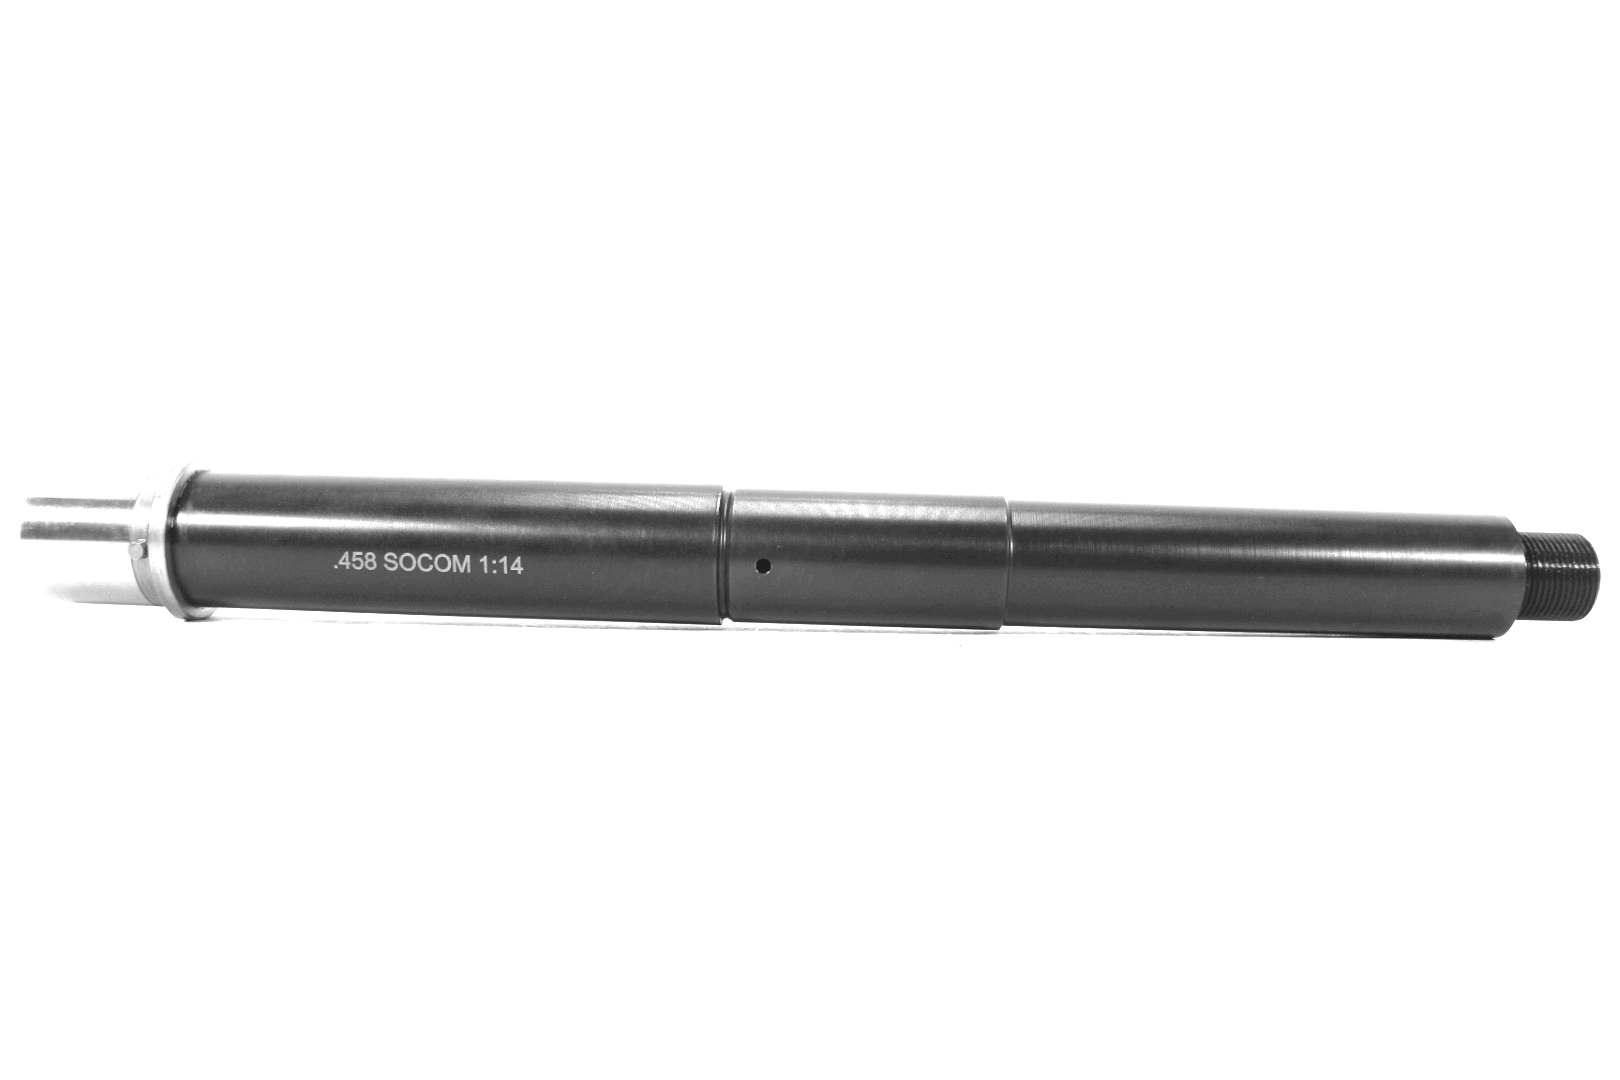 Tactical Kinetics AR-15 10.5 inch 458 Socom Melonite Barrel